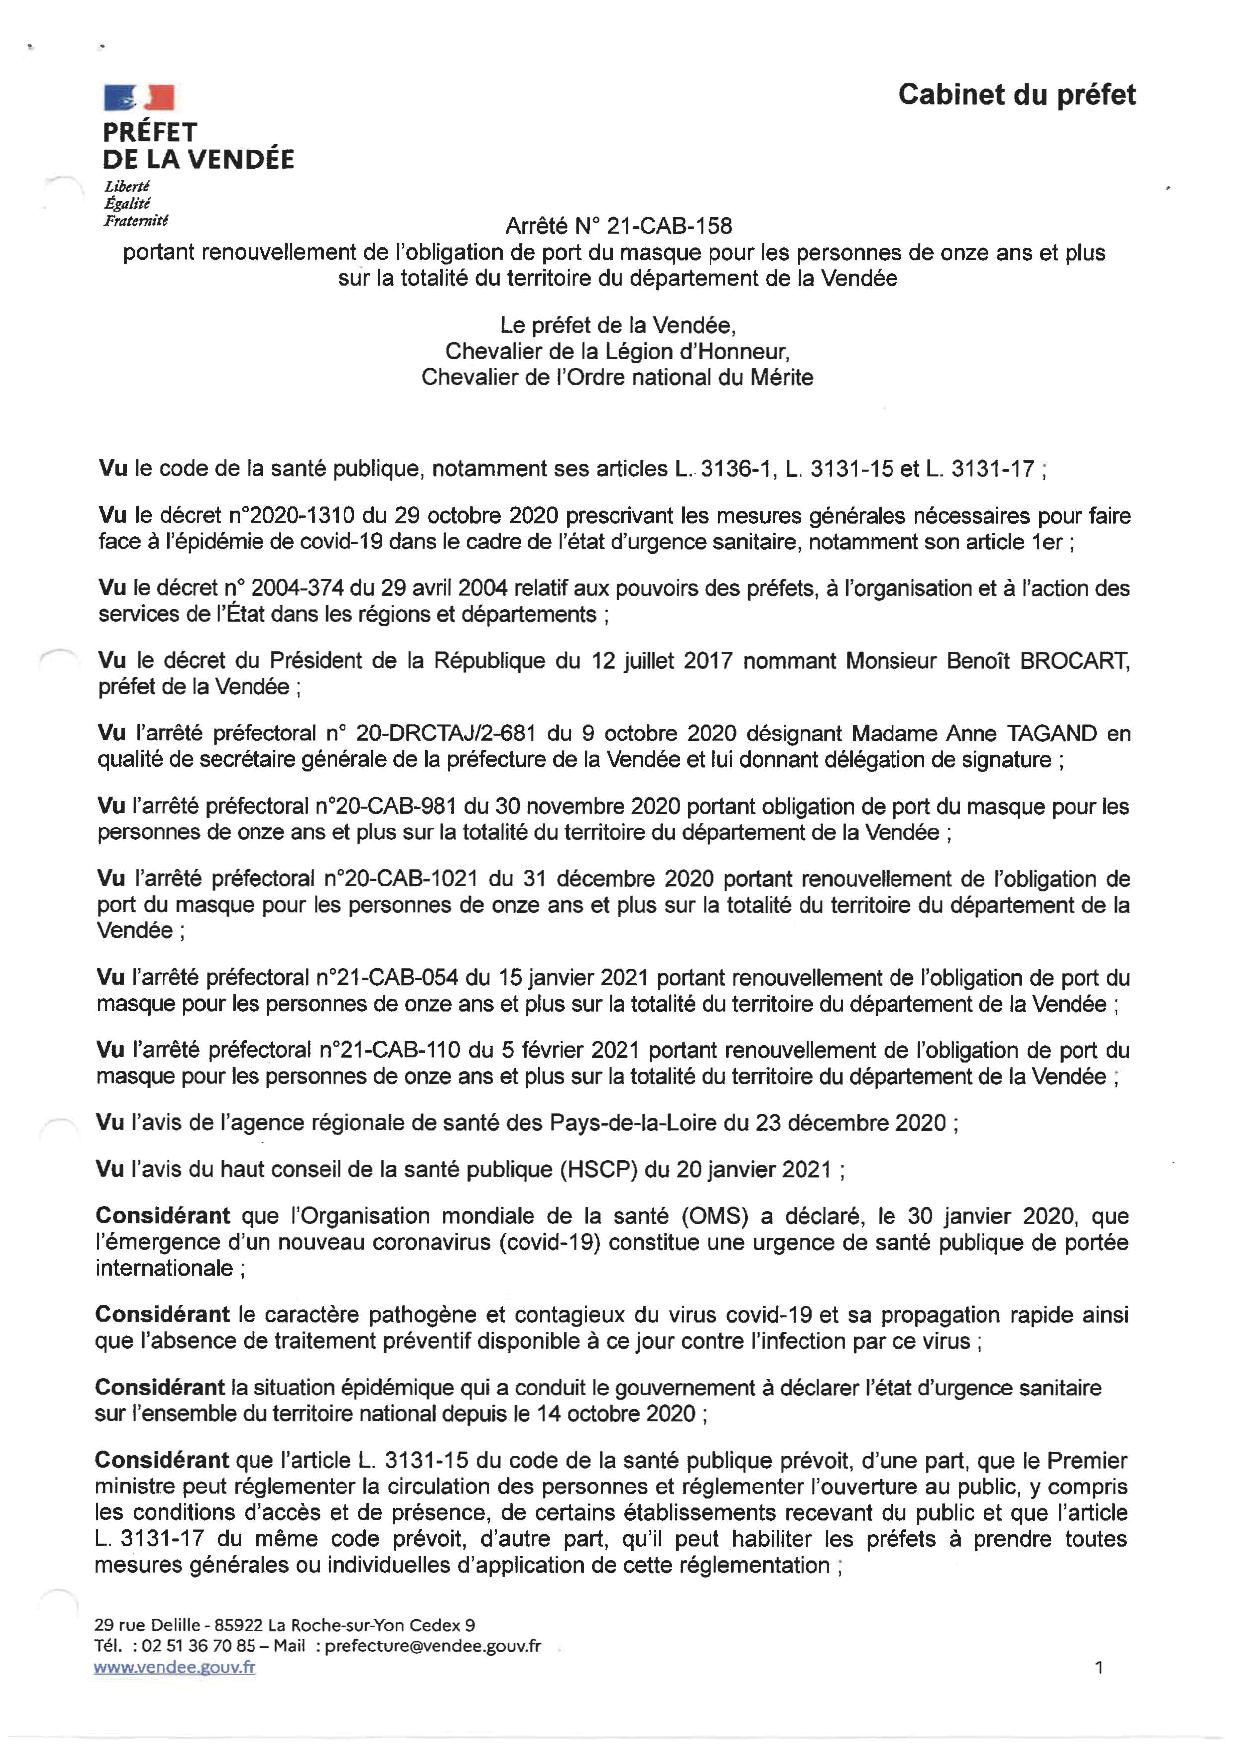 Obligation du port du masque pour les personnes de onze ans et plus sur la totalité du département de la Vendée jusqu'au lundi 8 mars 2021 inclus